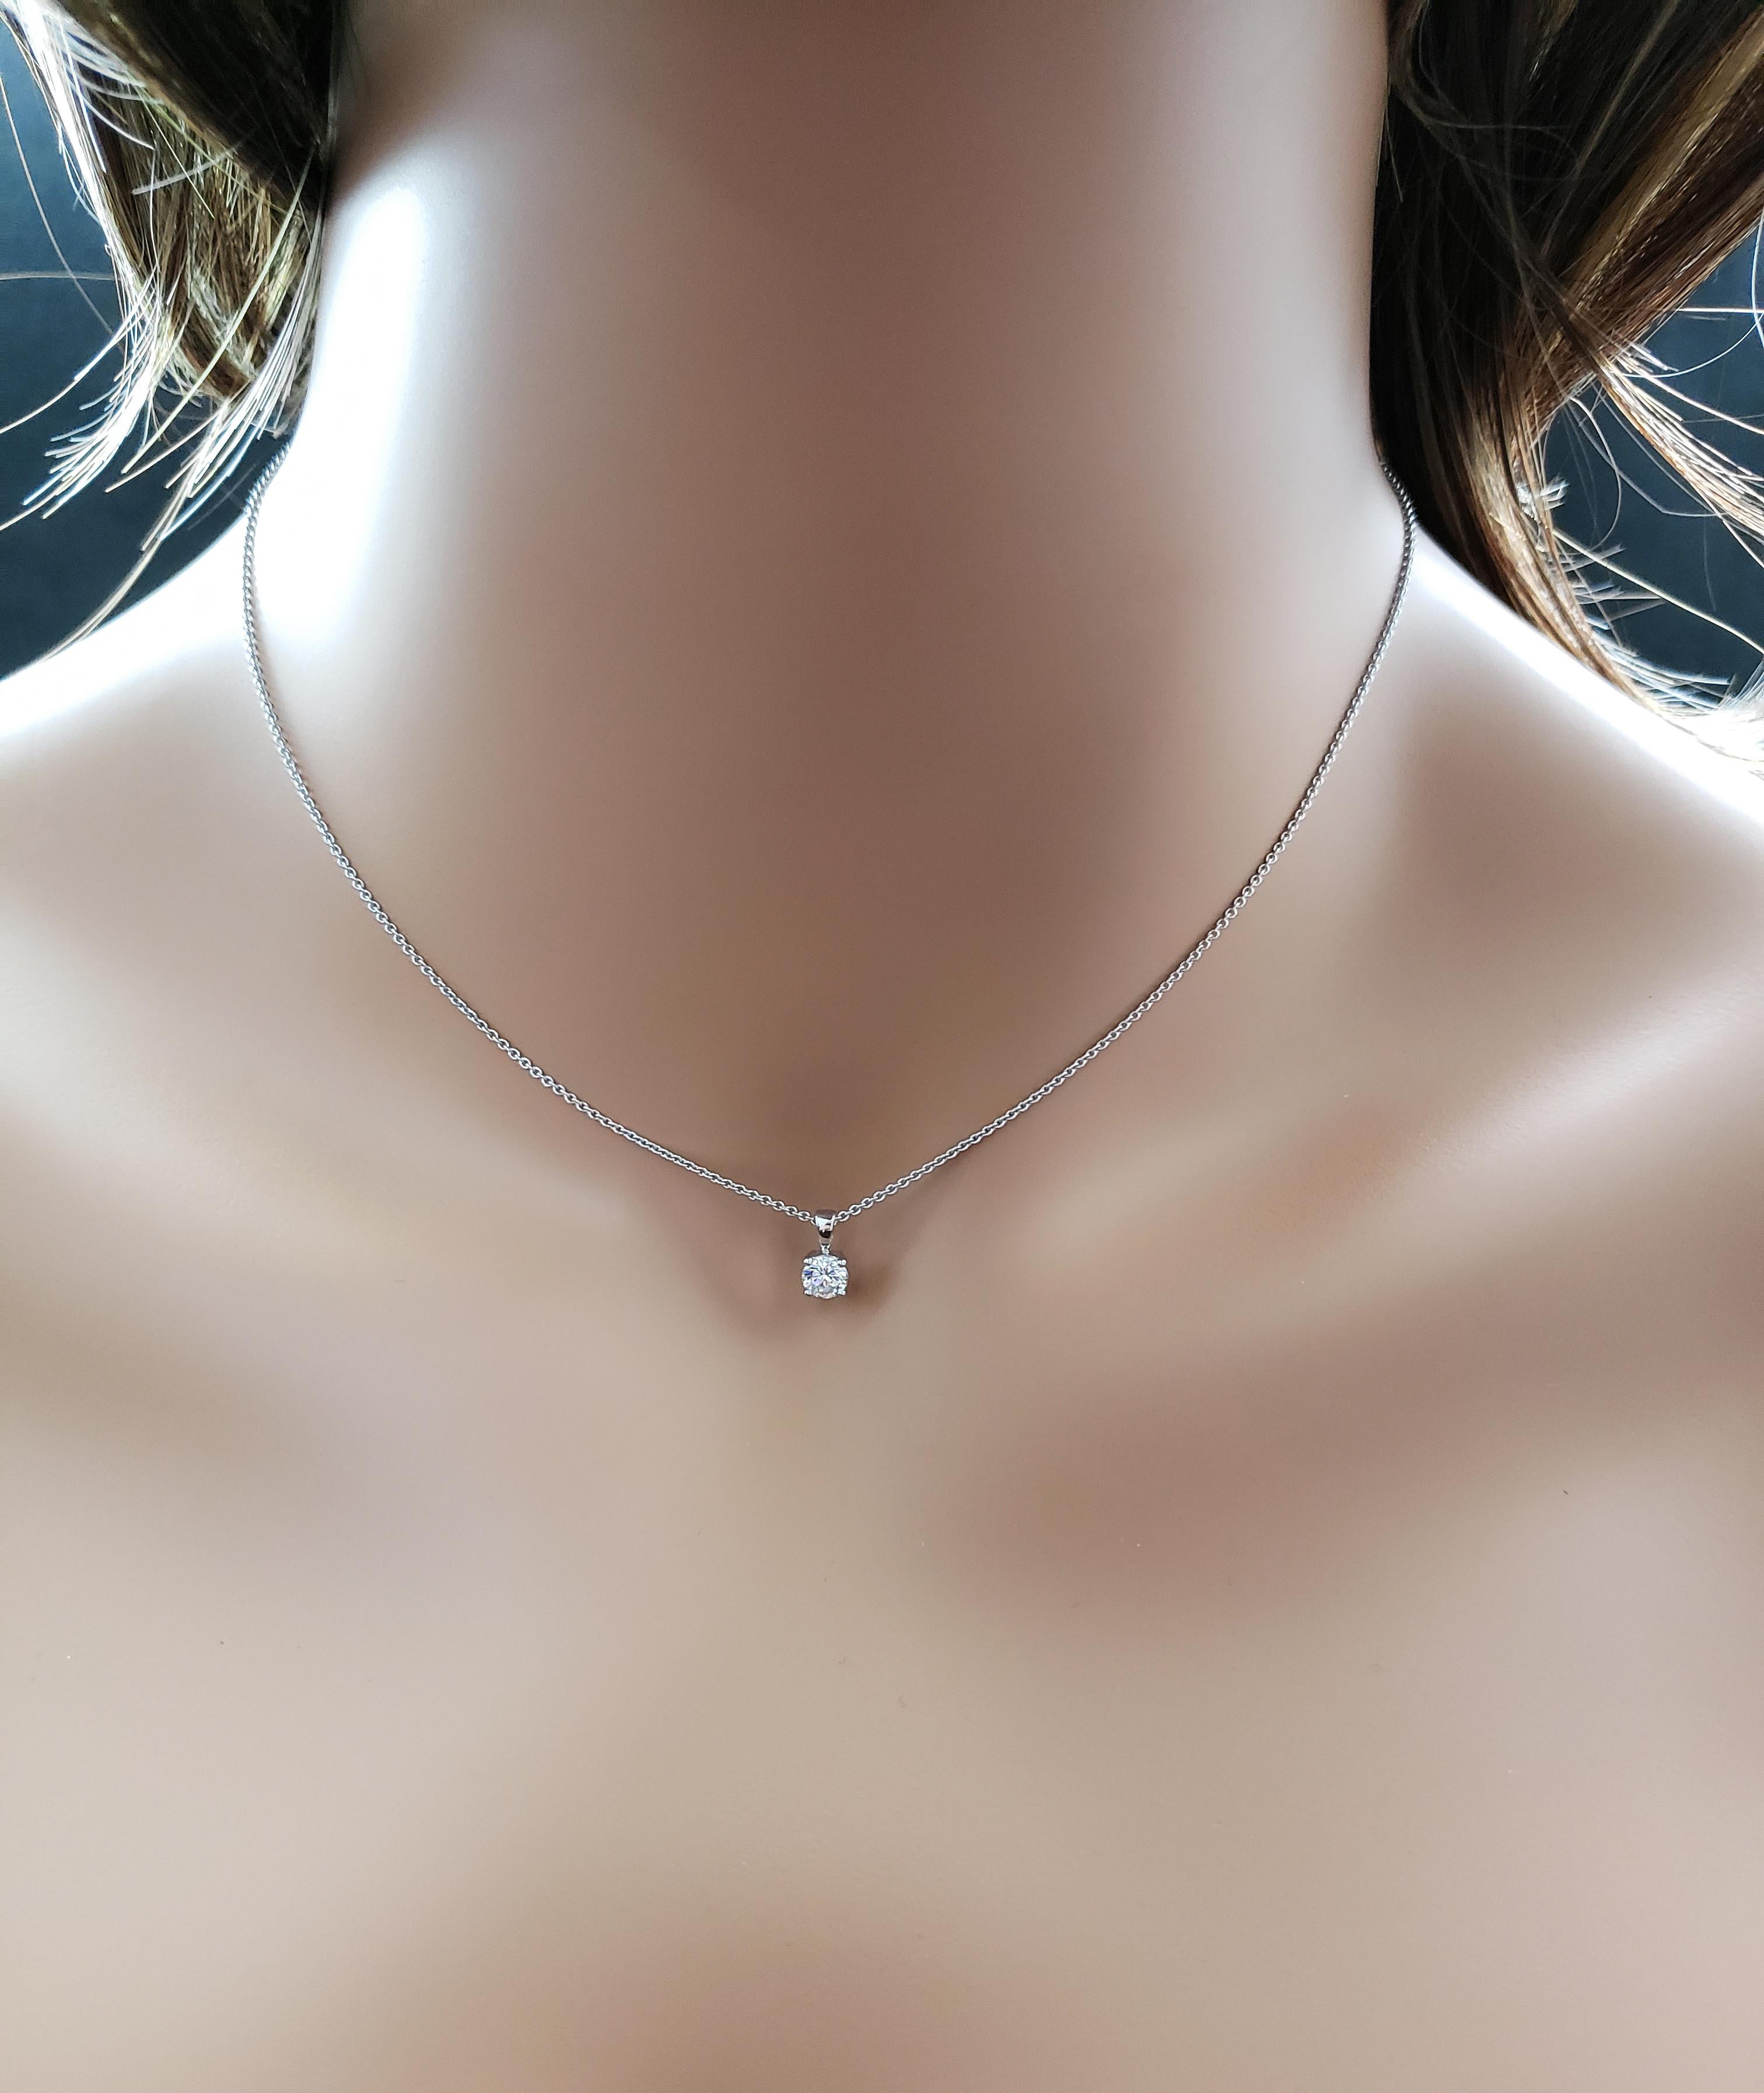 0.3 carat diamond necklace